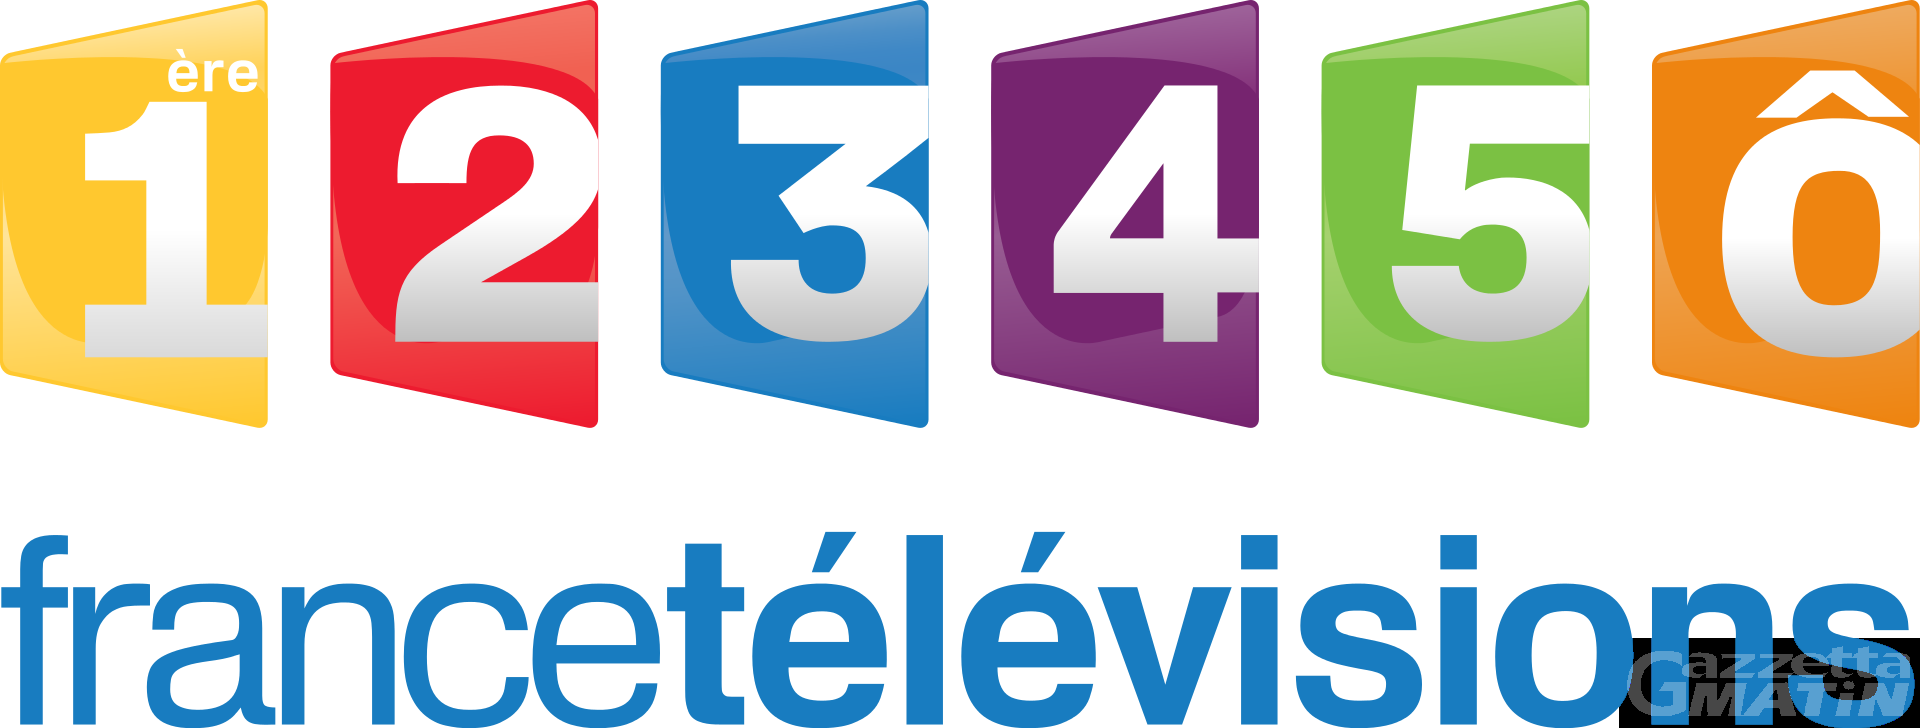 Francofonia: possibile la ridiffusione dei canali di France Télévisions